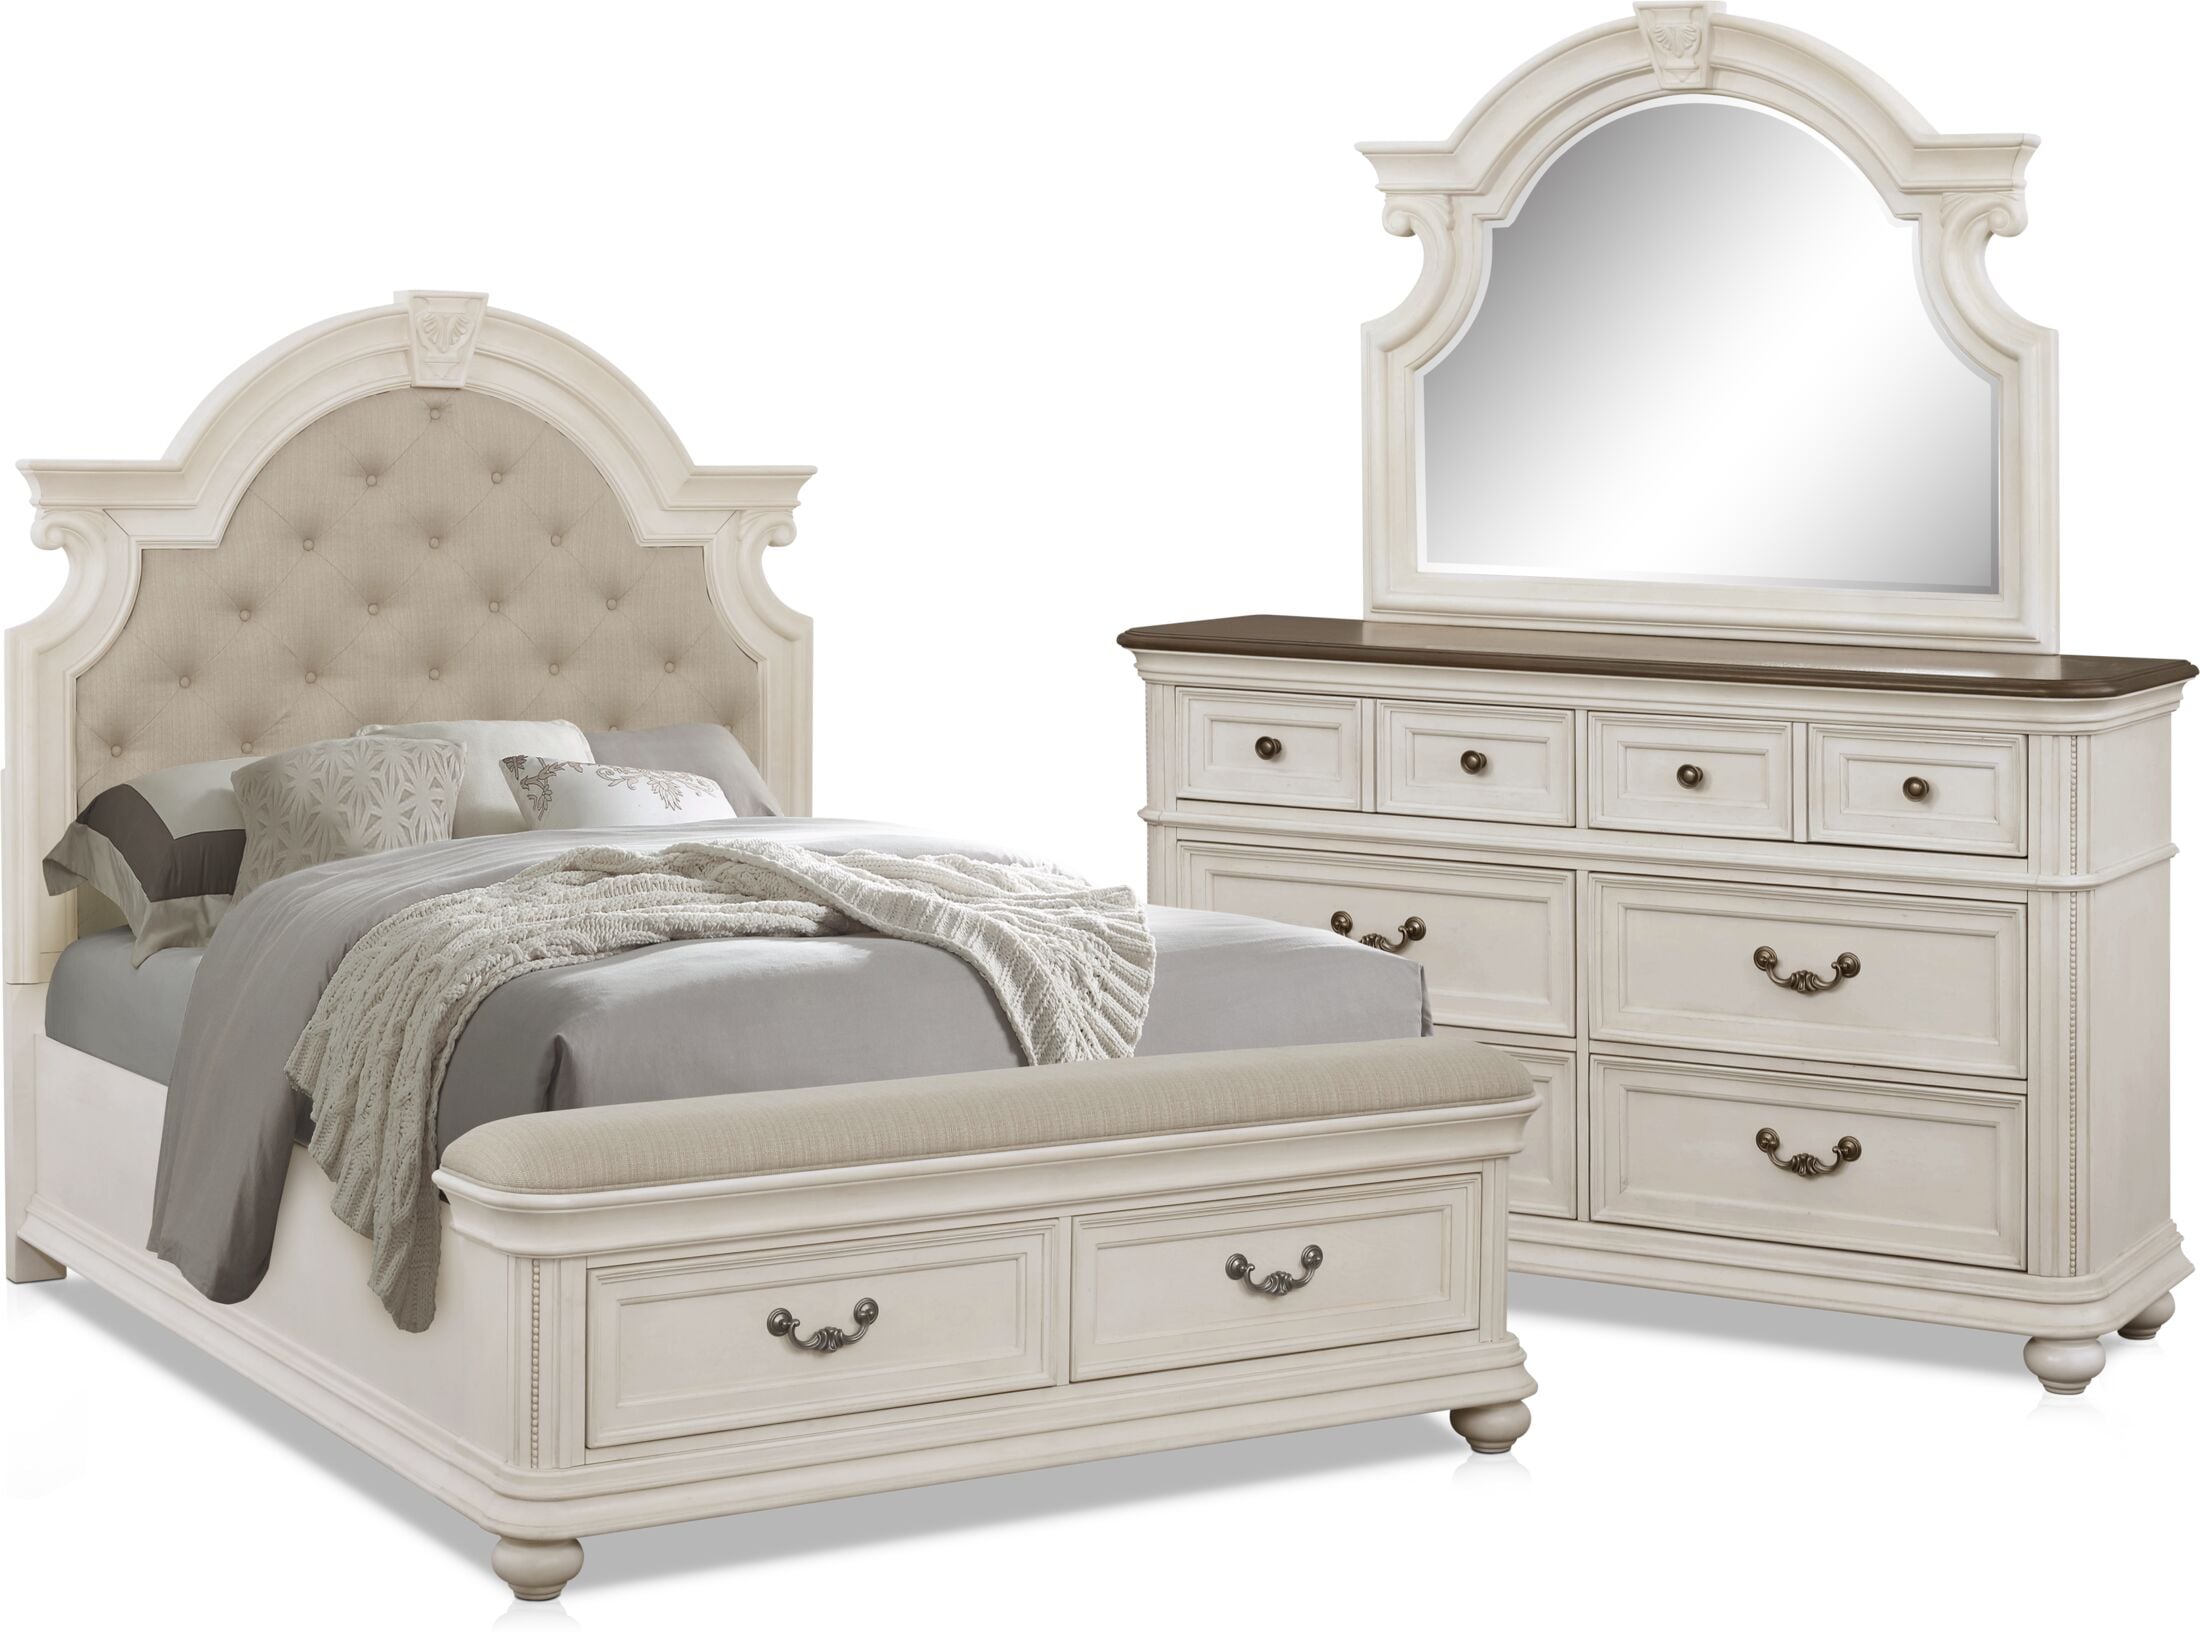 white mayfair bedroom furniture